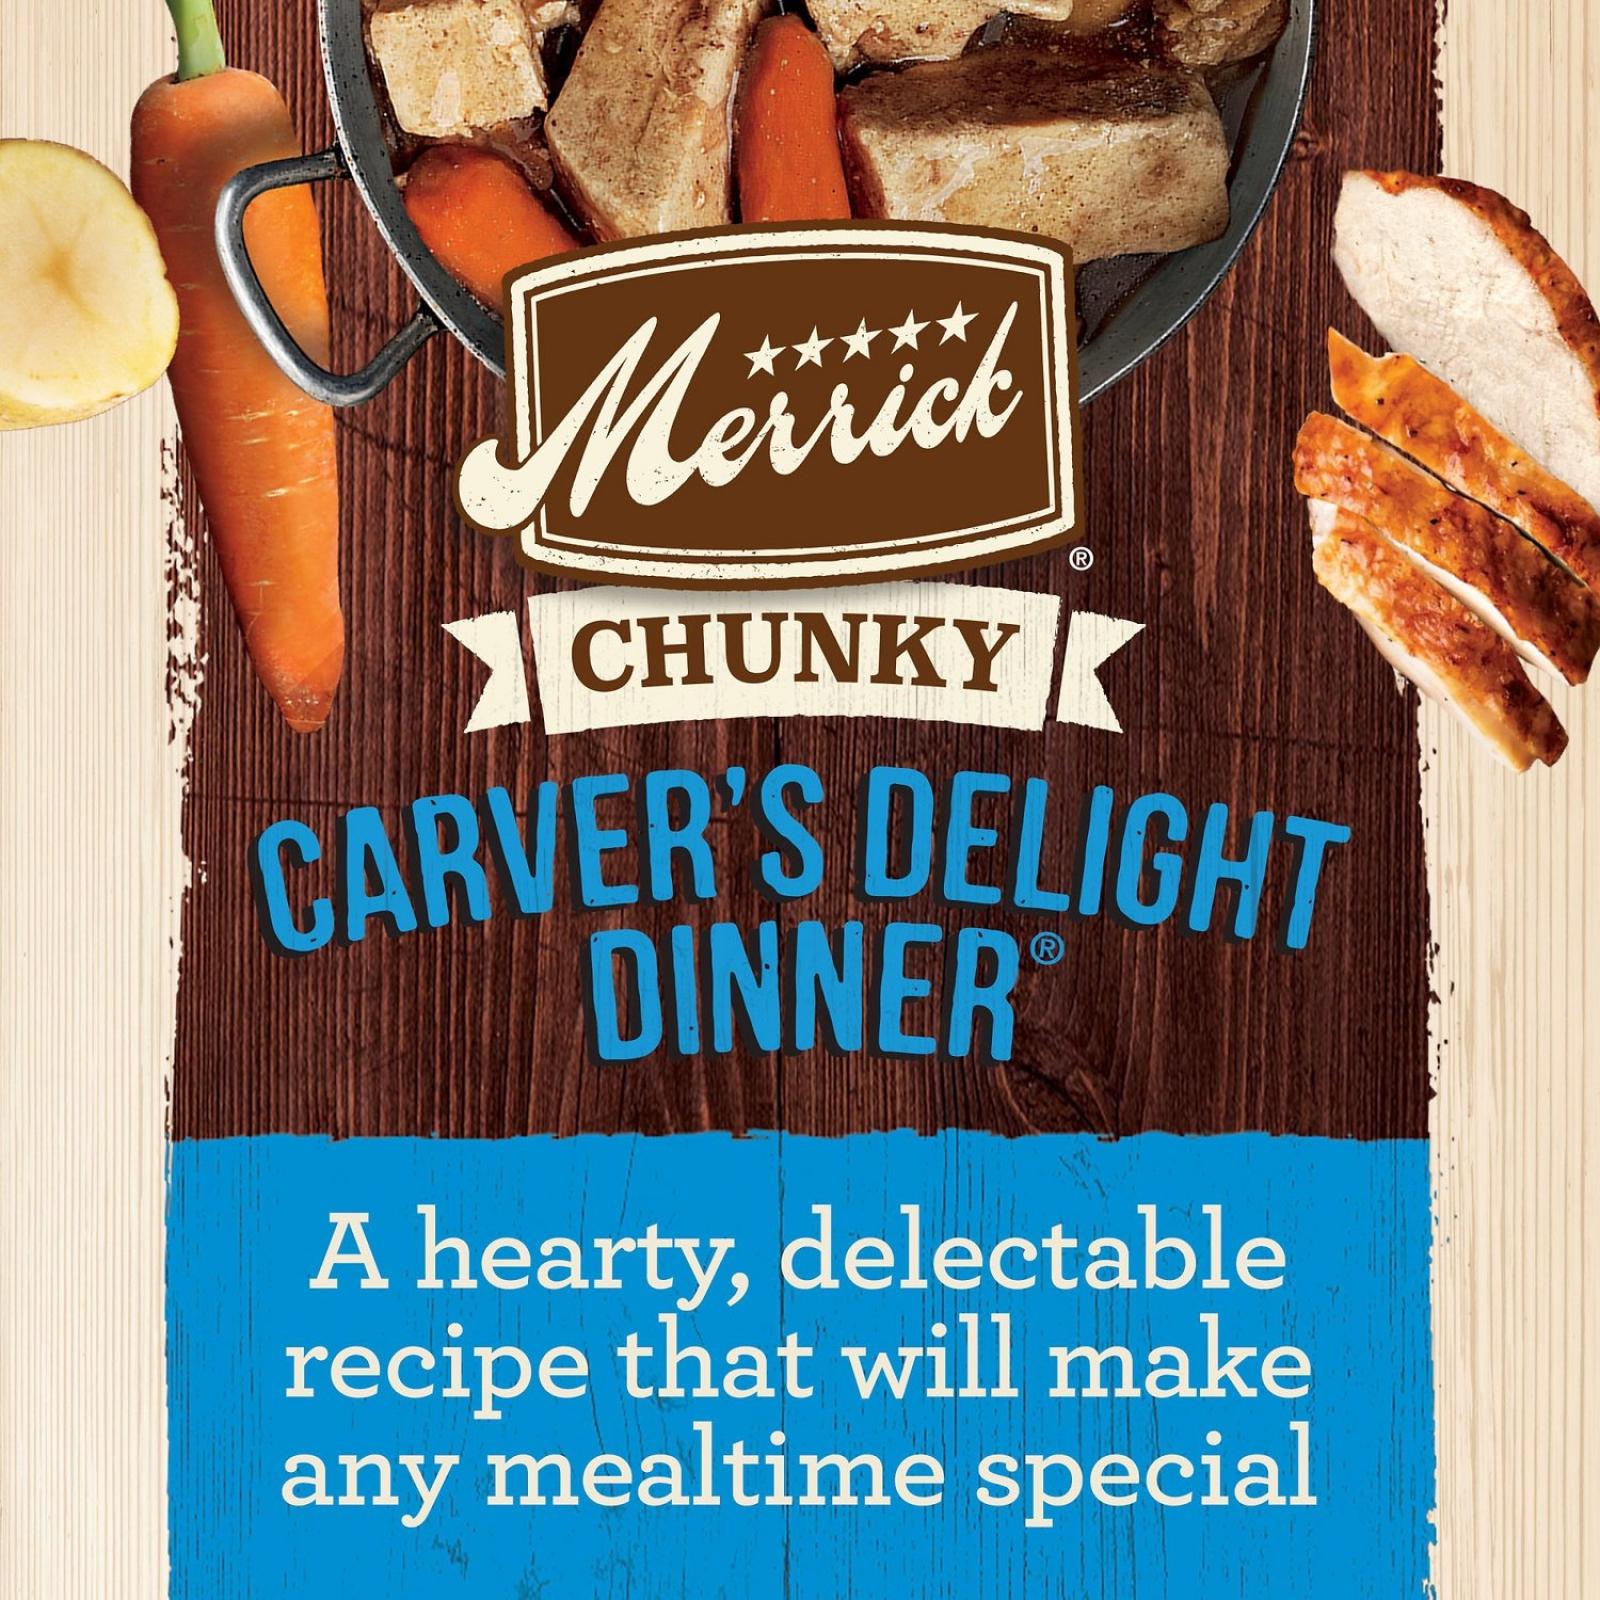 Merrick Chunky Grain Free Carver's Delight Dinner In Gravy Wet Dog Food